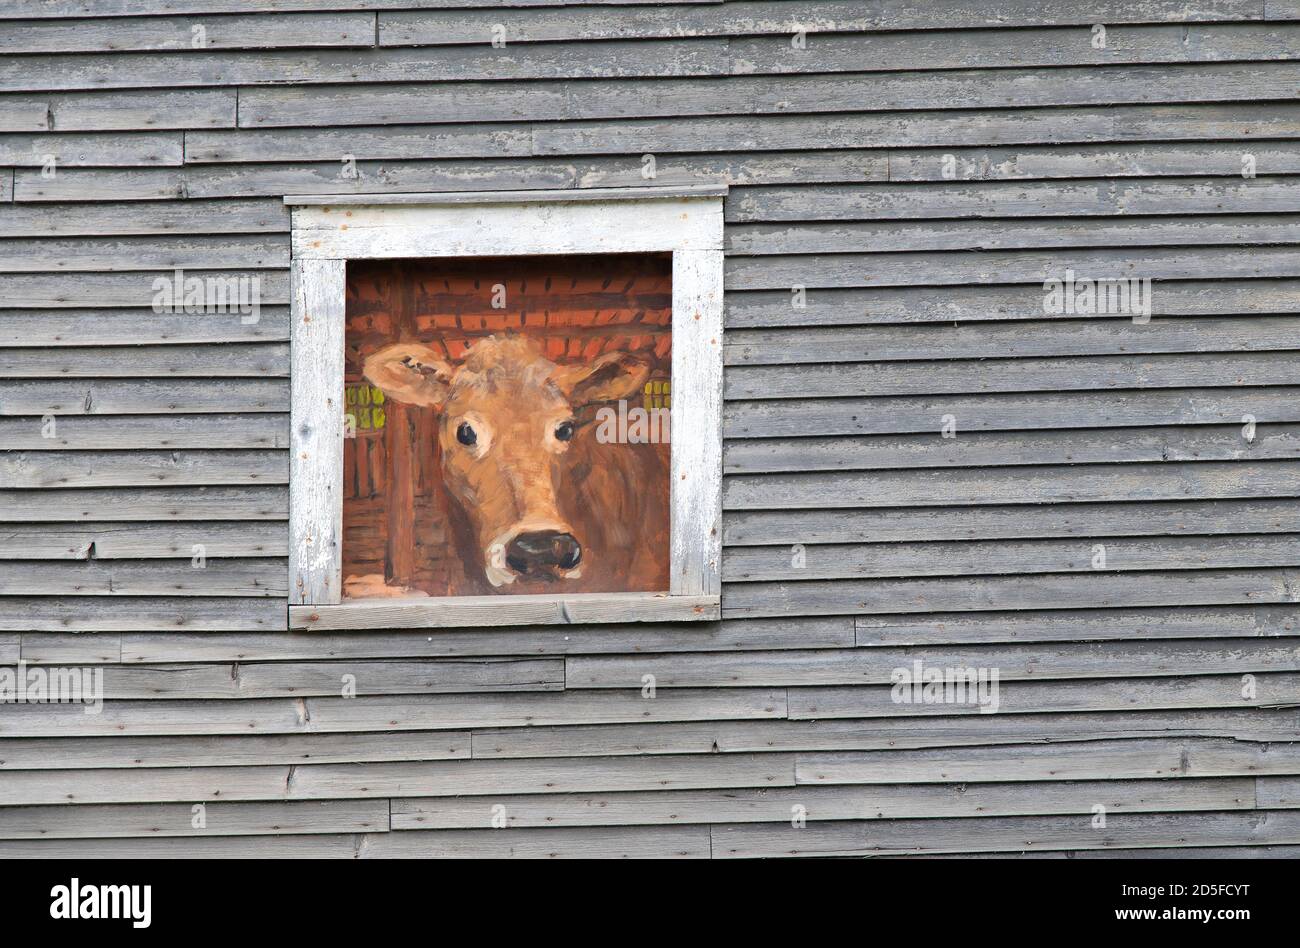 Une peinture sur une fenêtre de grange d'une vache qui regarde le long de RT. 65 à Brookfield, Vermont, États-Unis Banque D'Images